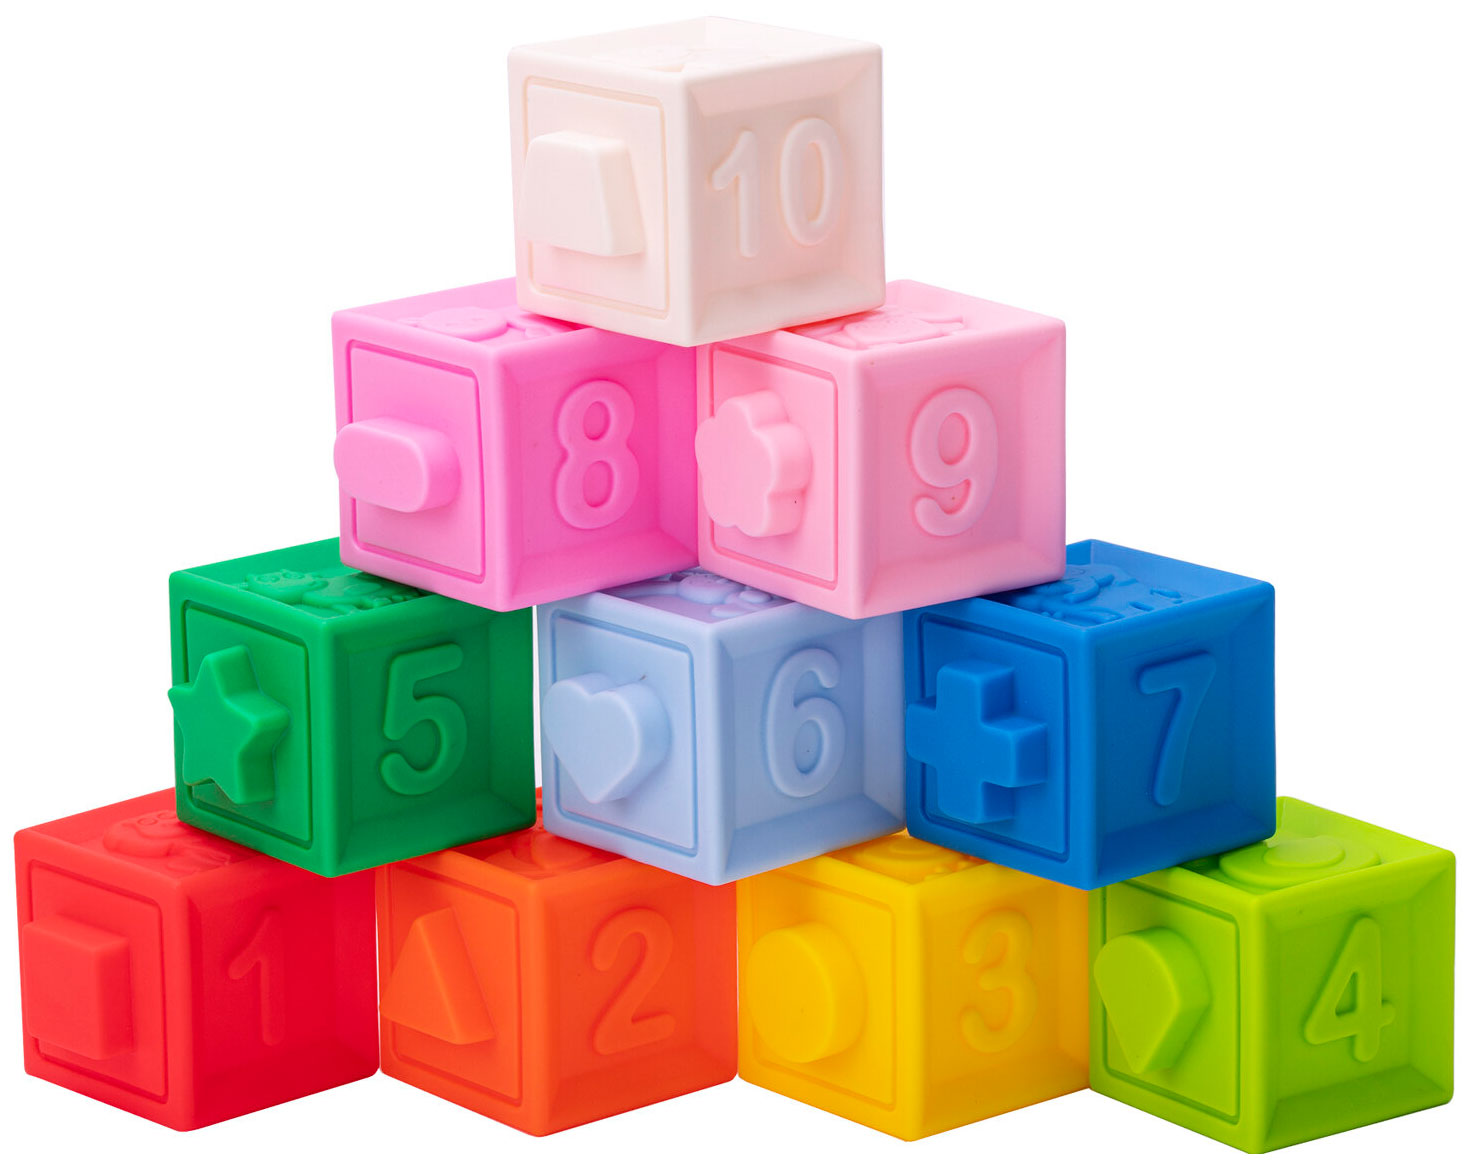 Тактильные кубики Юнландия развивающие с функцией сортера ЭКО 10 штук 664703 3x3x 3 скоростные кубики пазл профессиональные волшебные кубики вращение кубики magicos венгерские кубики 3 × 3 для детей aldult фиджет игрушки